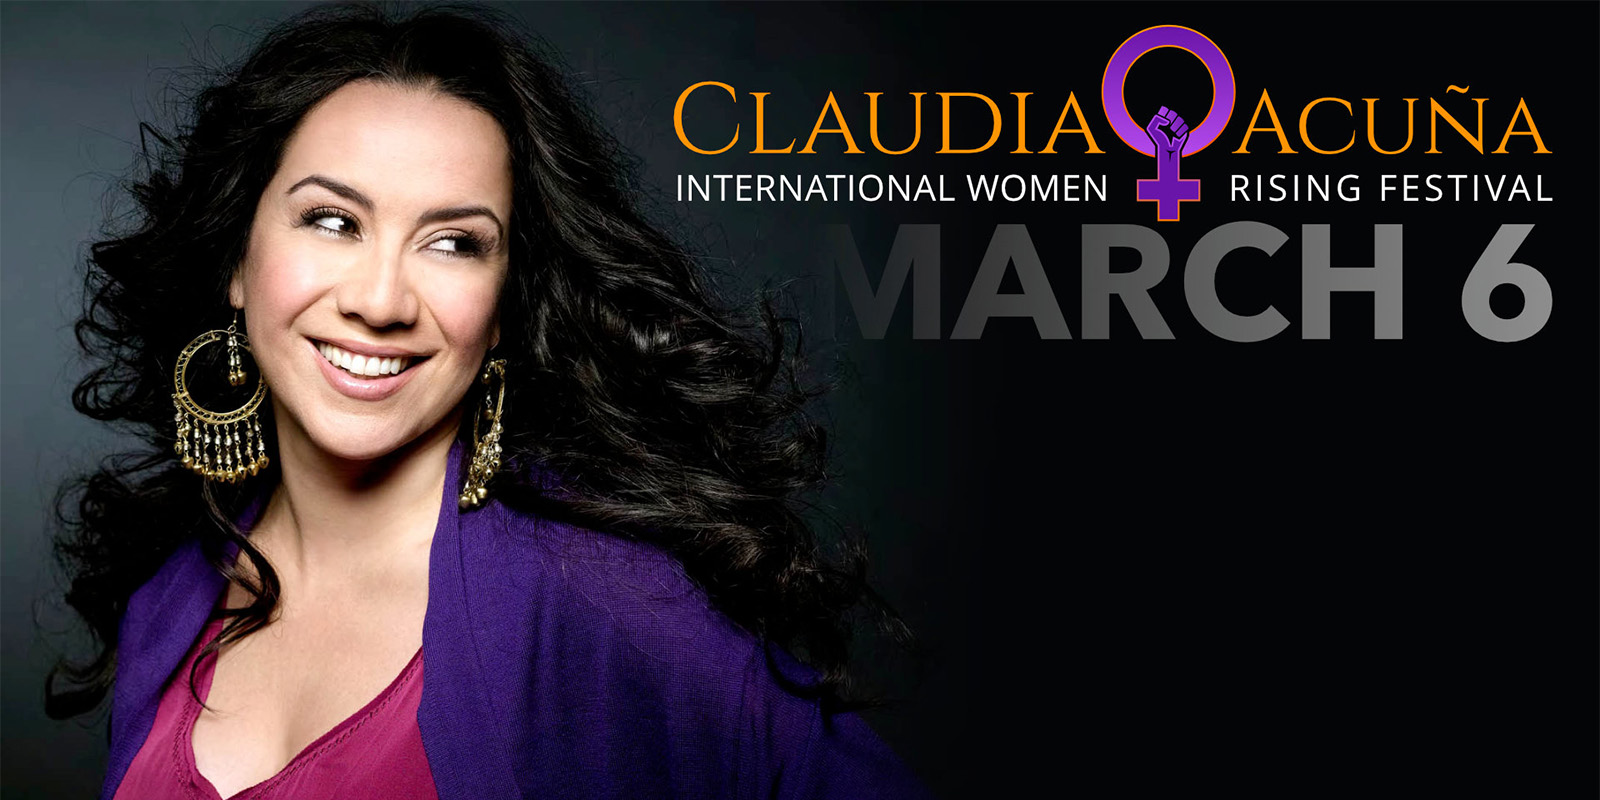 Claudia Acuna